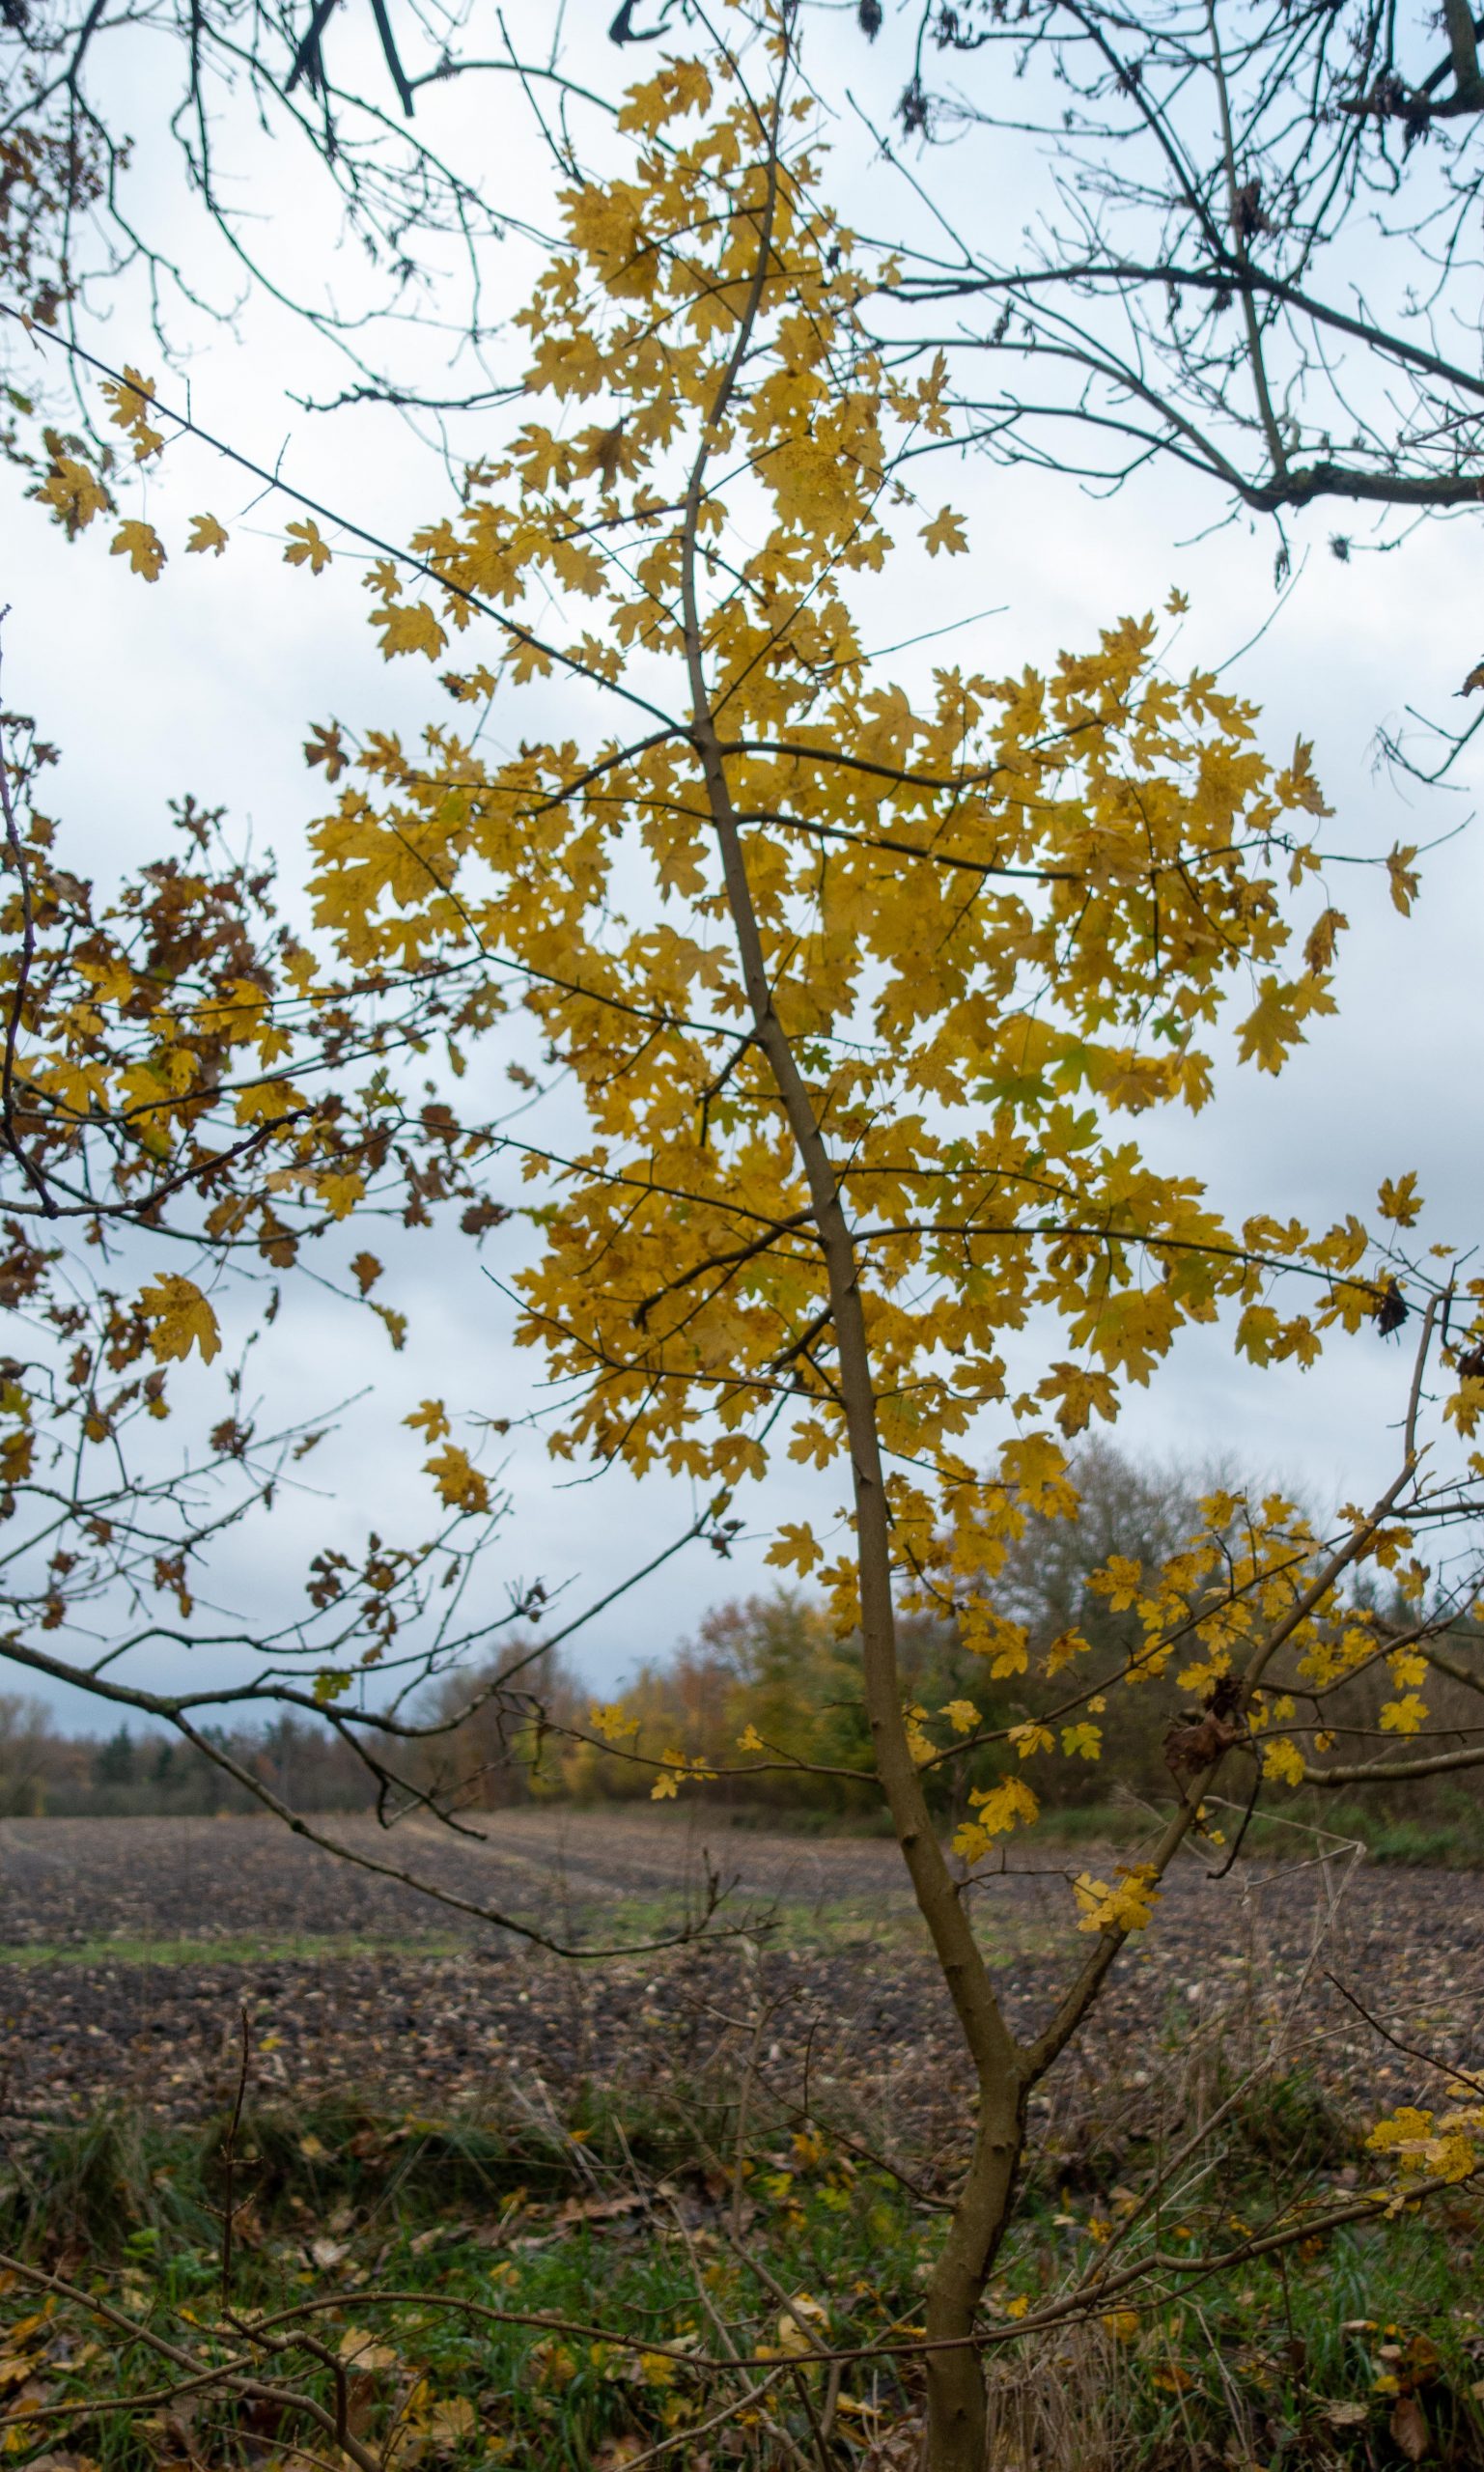 Herbst. Baum mit goldenem Laub